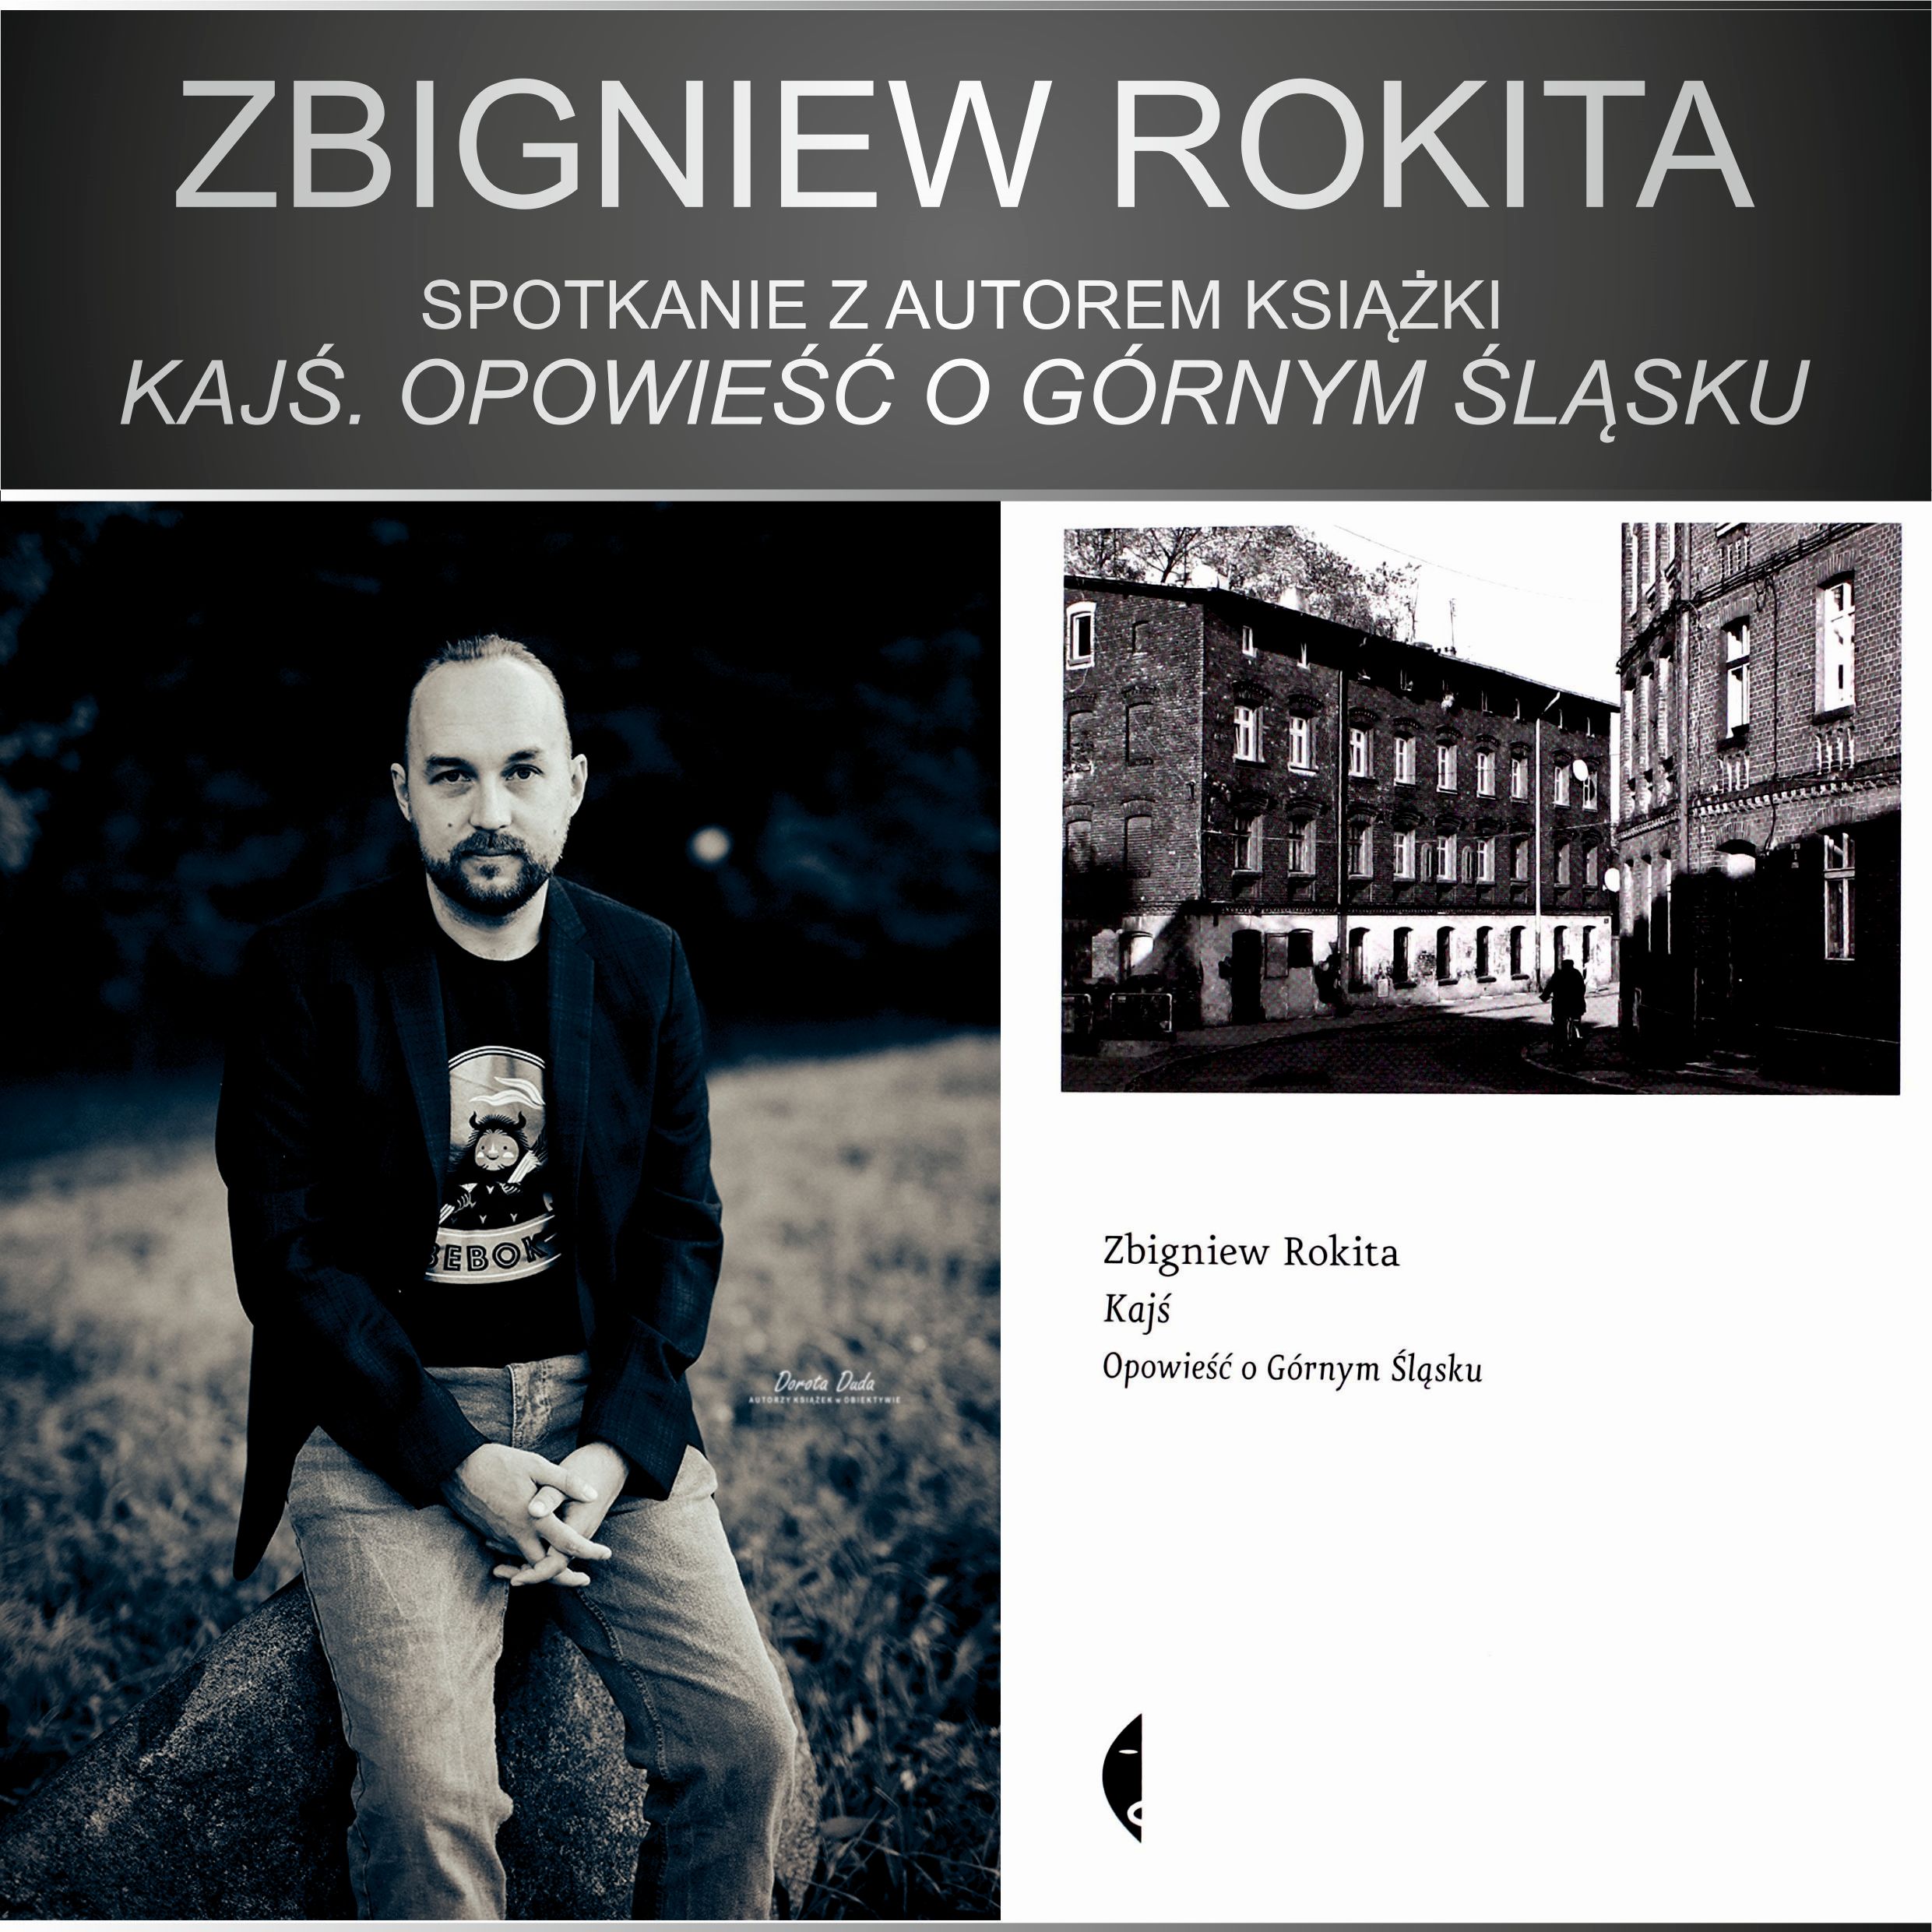 Zbigniew Rokita - Spotkanie Z Autorem Książki "Kajś. Opowieść O Górnym Śląsku" - 23 Marca 2022, Godz. 18.00